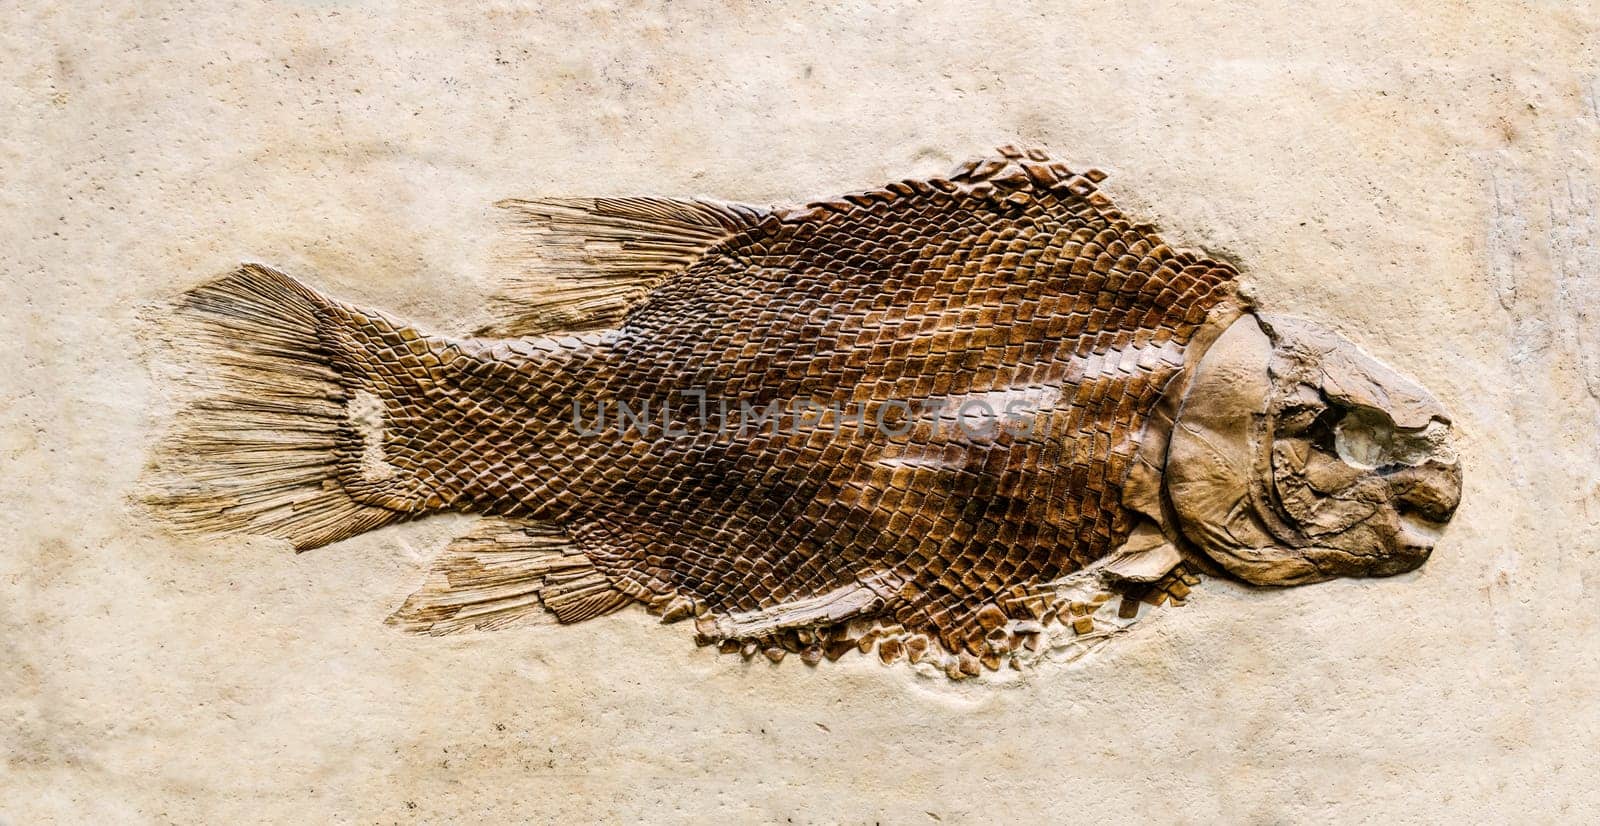 Prehistoric fish fossil by GekaSkr